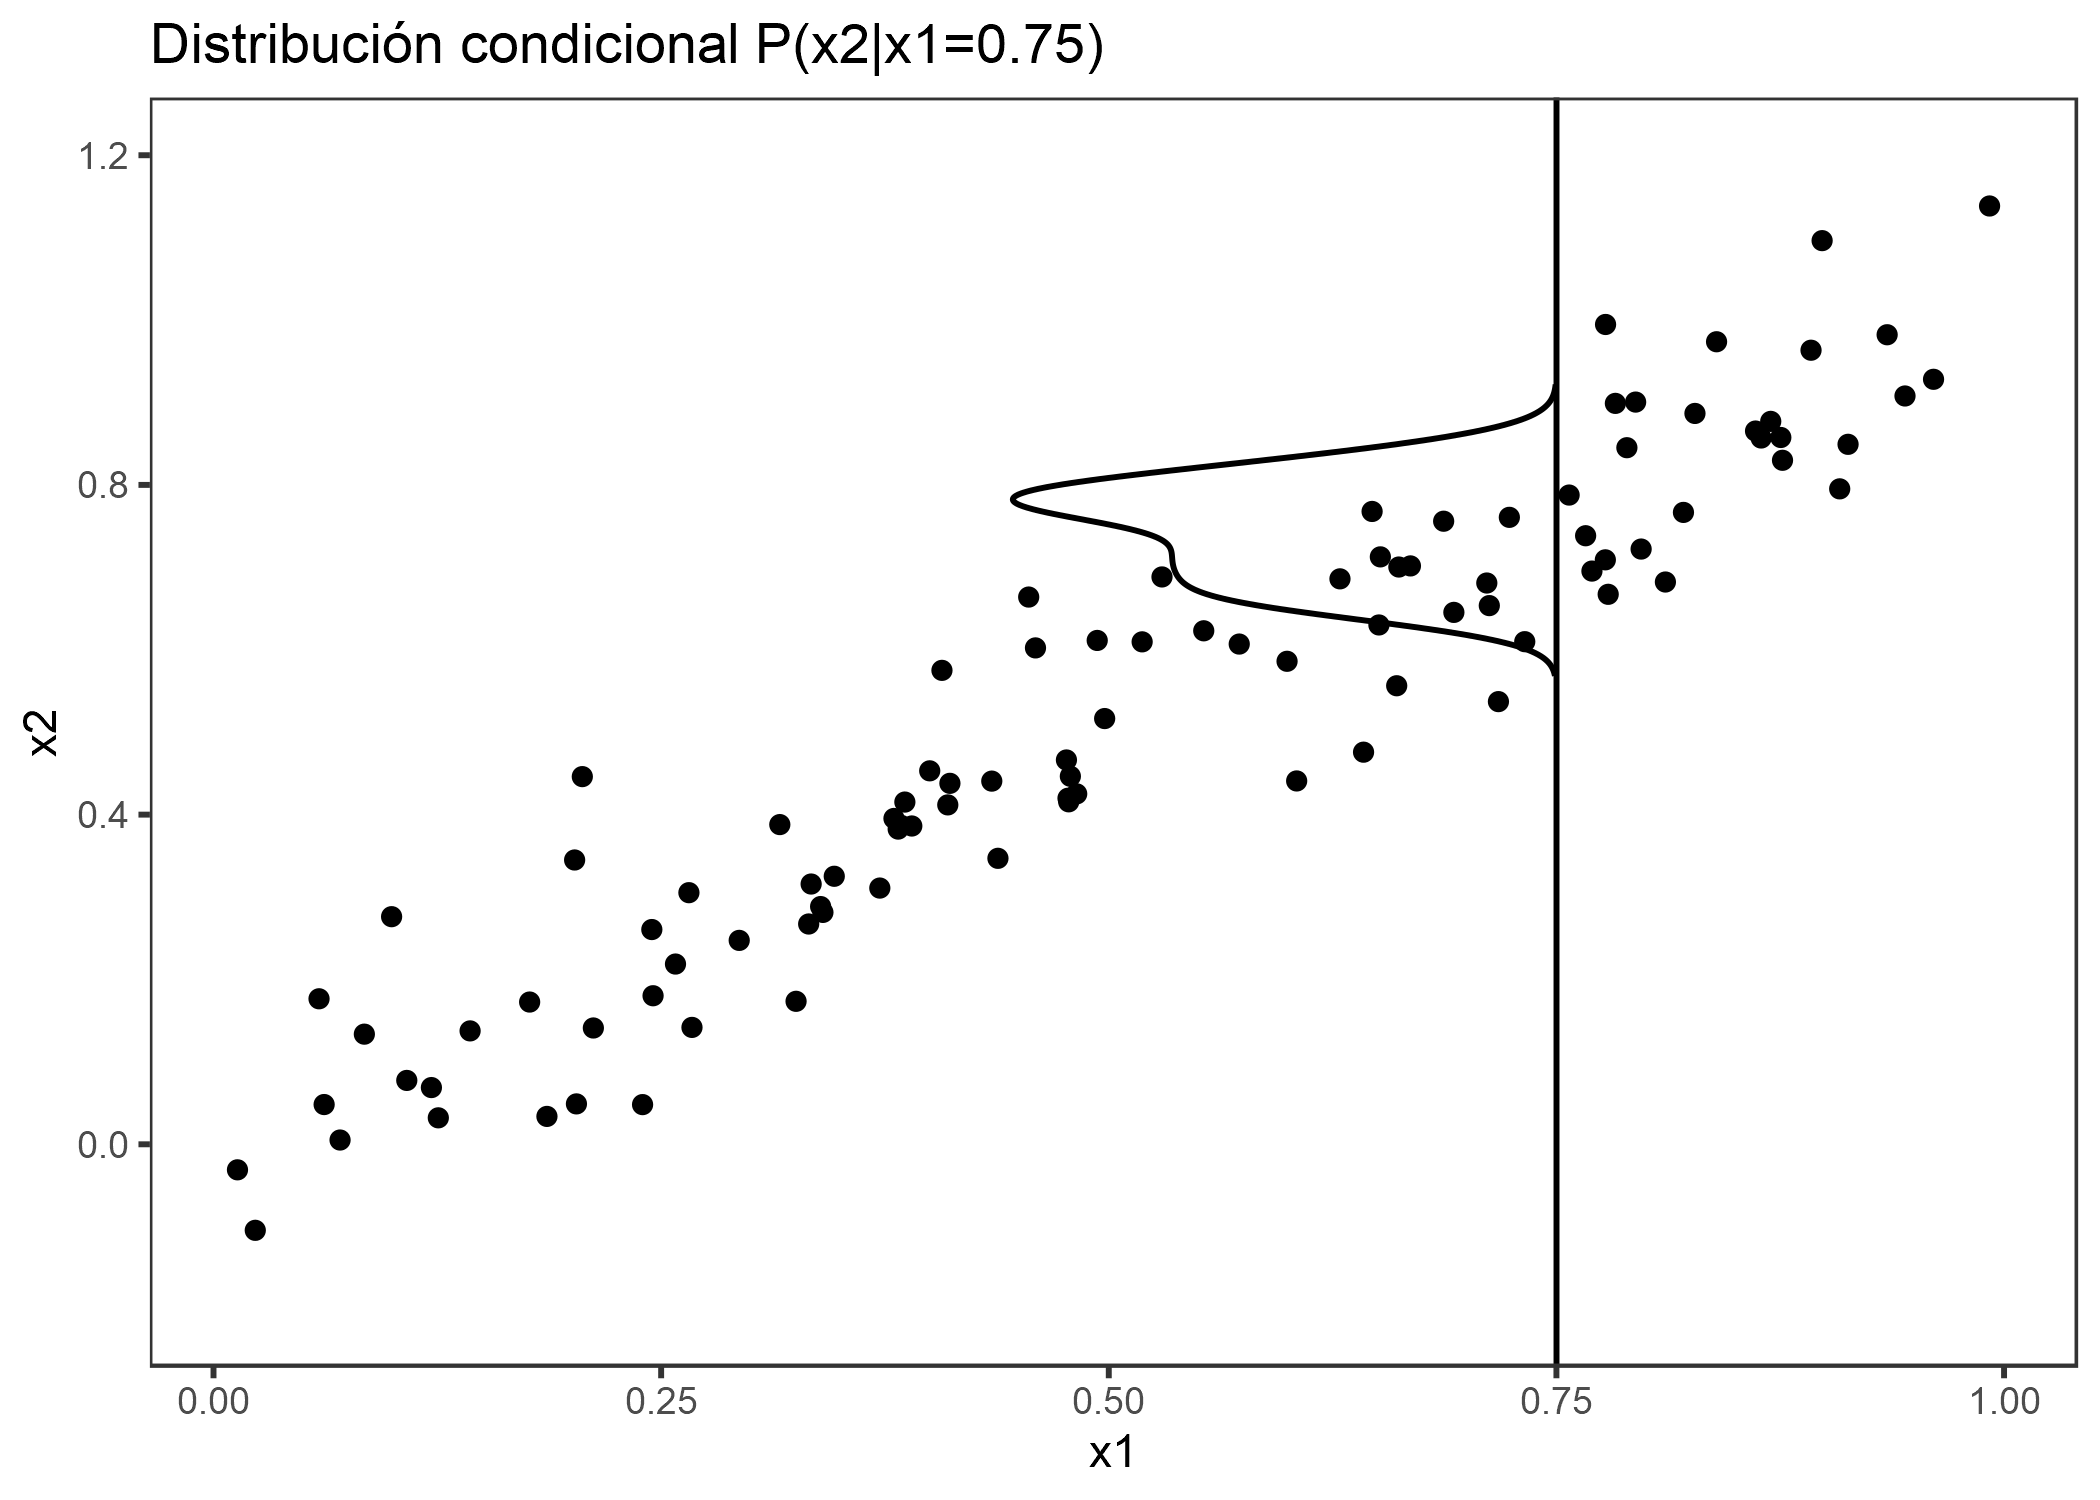 Características fuertemente correlacionadas x1 y x2. M-Plots promedio sobre la distribución condicional. Aquí la distribución condicional de x2 en x1 = 0.75. El promedio de las predicciones locales lleva a mezclar los efectos de ambas características 